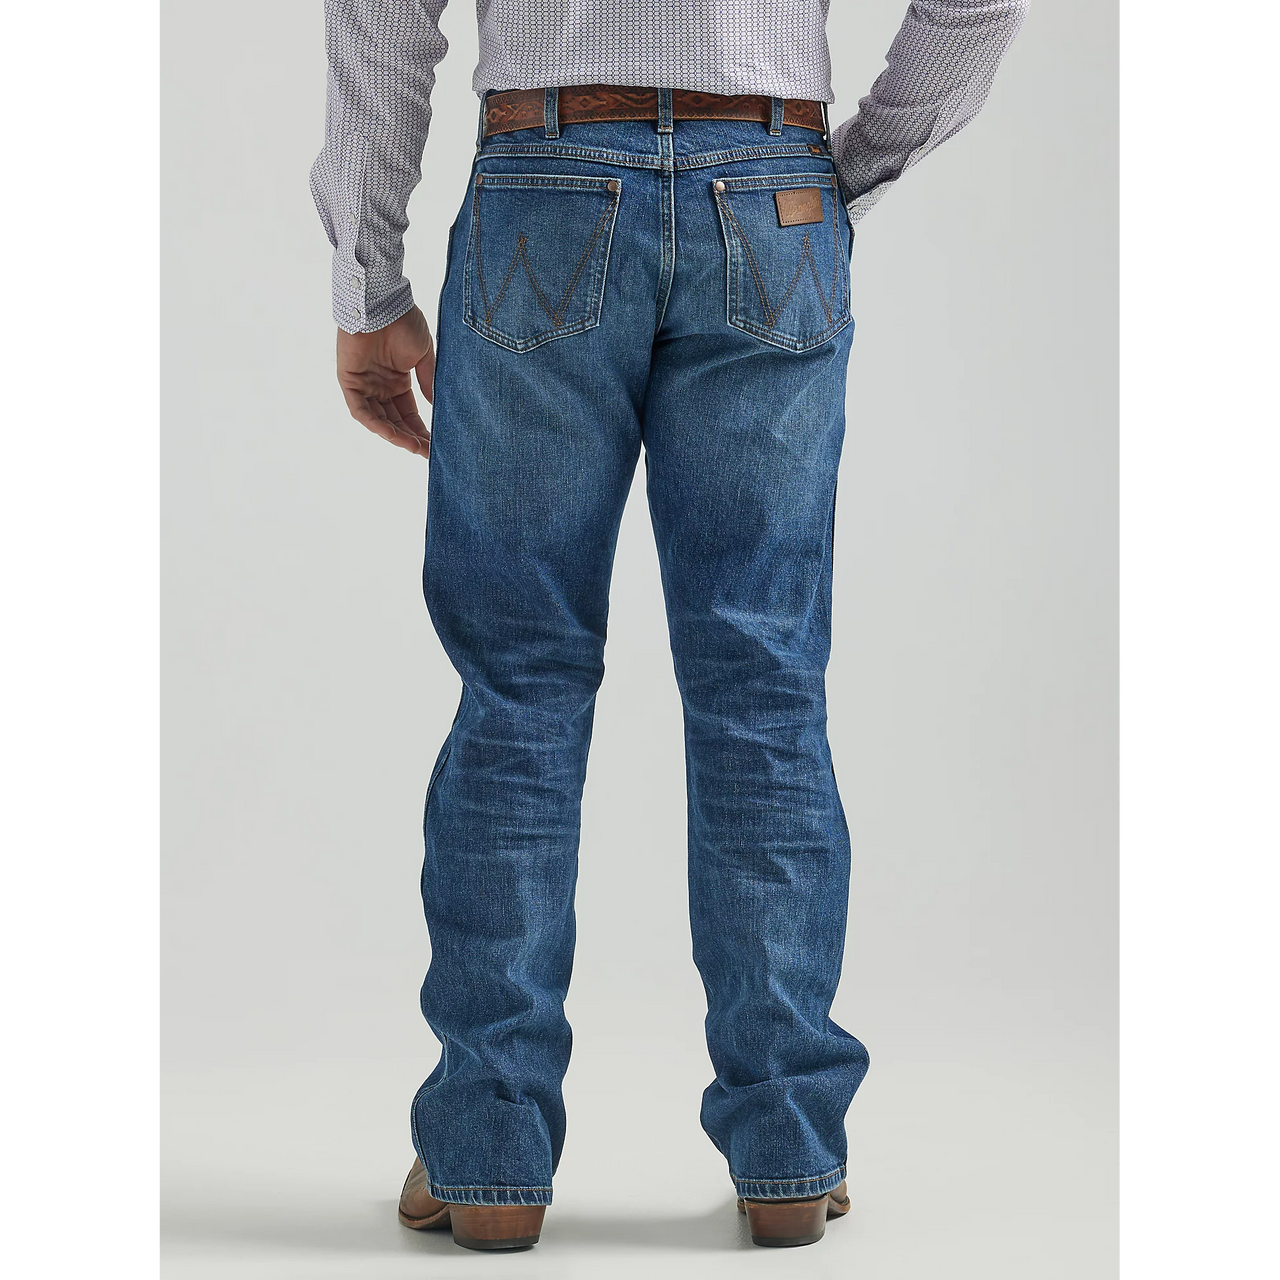 Wrangler Men's Retro Premium Slim Boot Jeans - Wild West